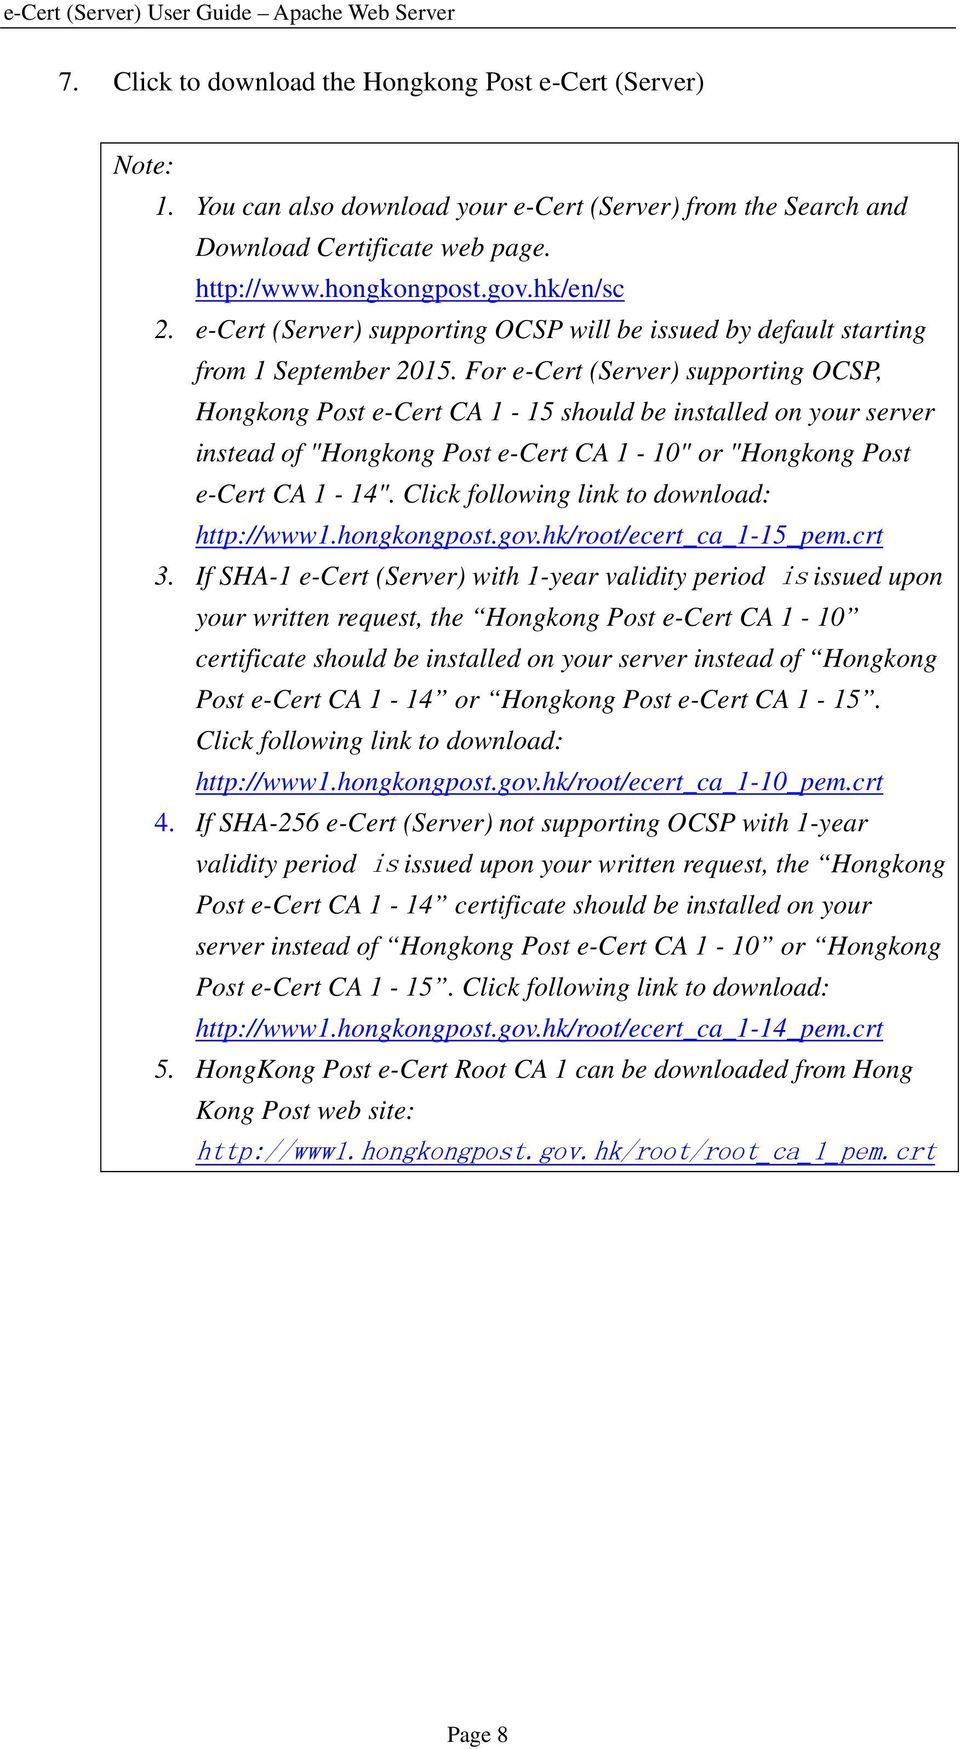 For e-cert (Server) supporting OCSP, Hongkong Post e-cert CA 1-15 should be installed on your server instead of "Hongkong Post e-cert CA 1-10" or "Hongkong Post e-cert CA 1-14".